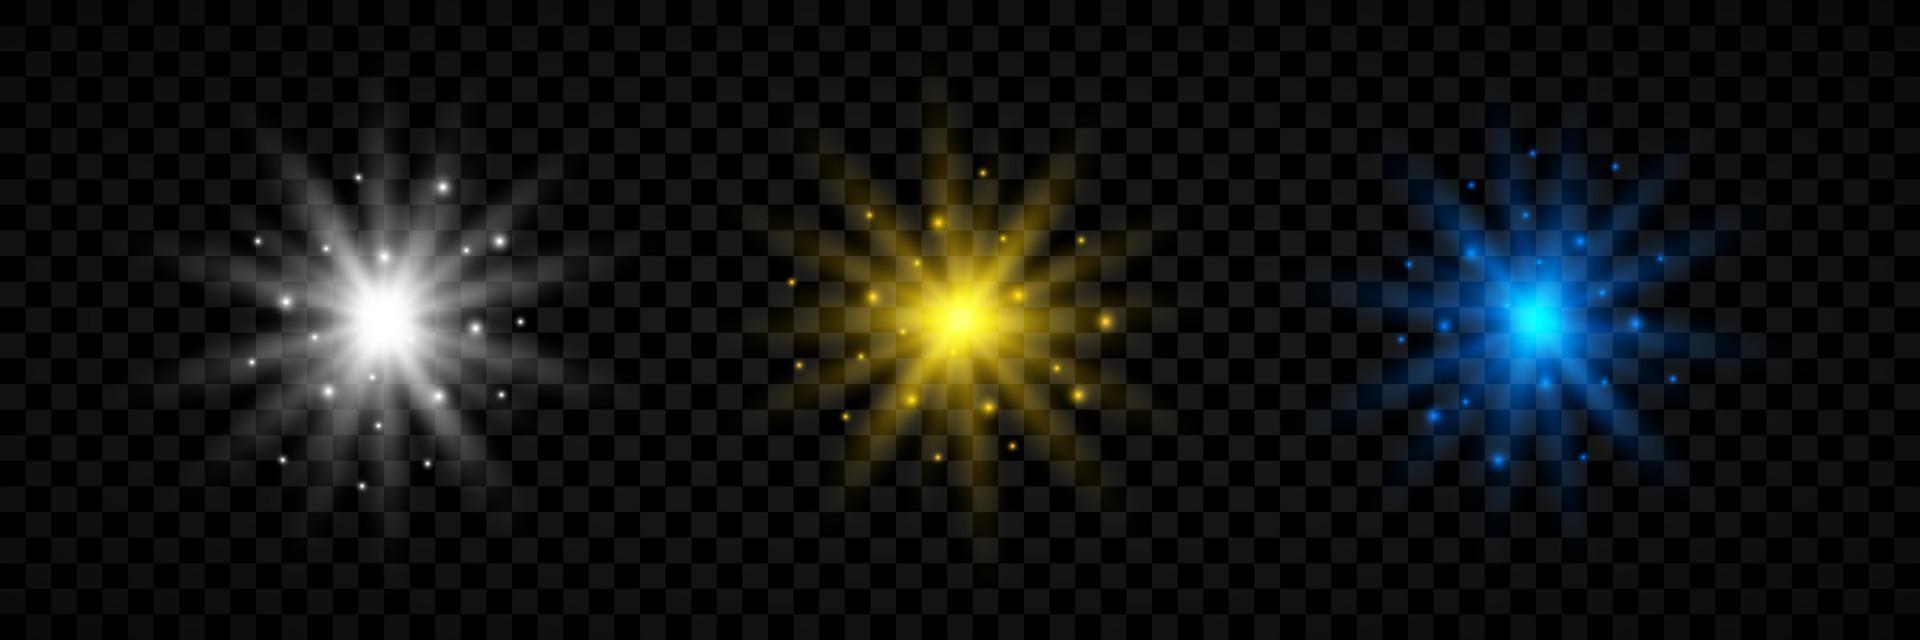 effet de lumière des fusées éclairantes. ensemble de trois effets de starburst de lumières rougeoyantes blanches, jaunes et bleues avec des étincelles. illustration vectorielle vecteur